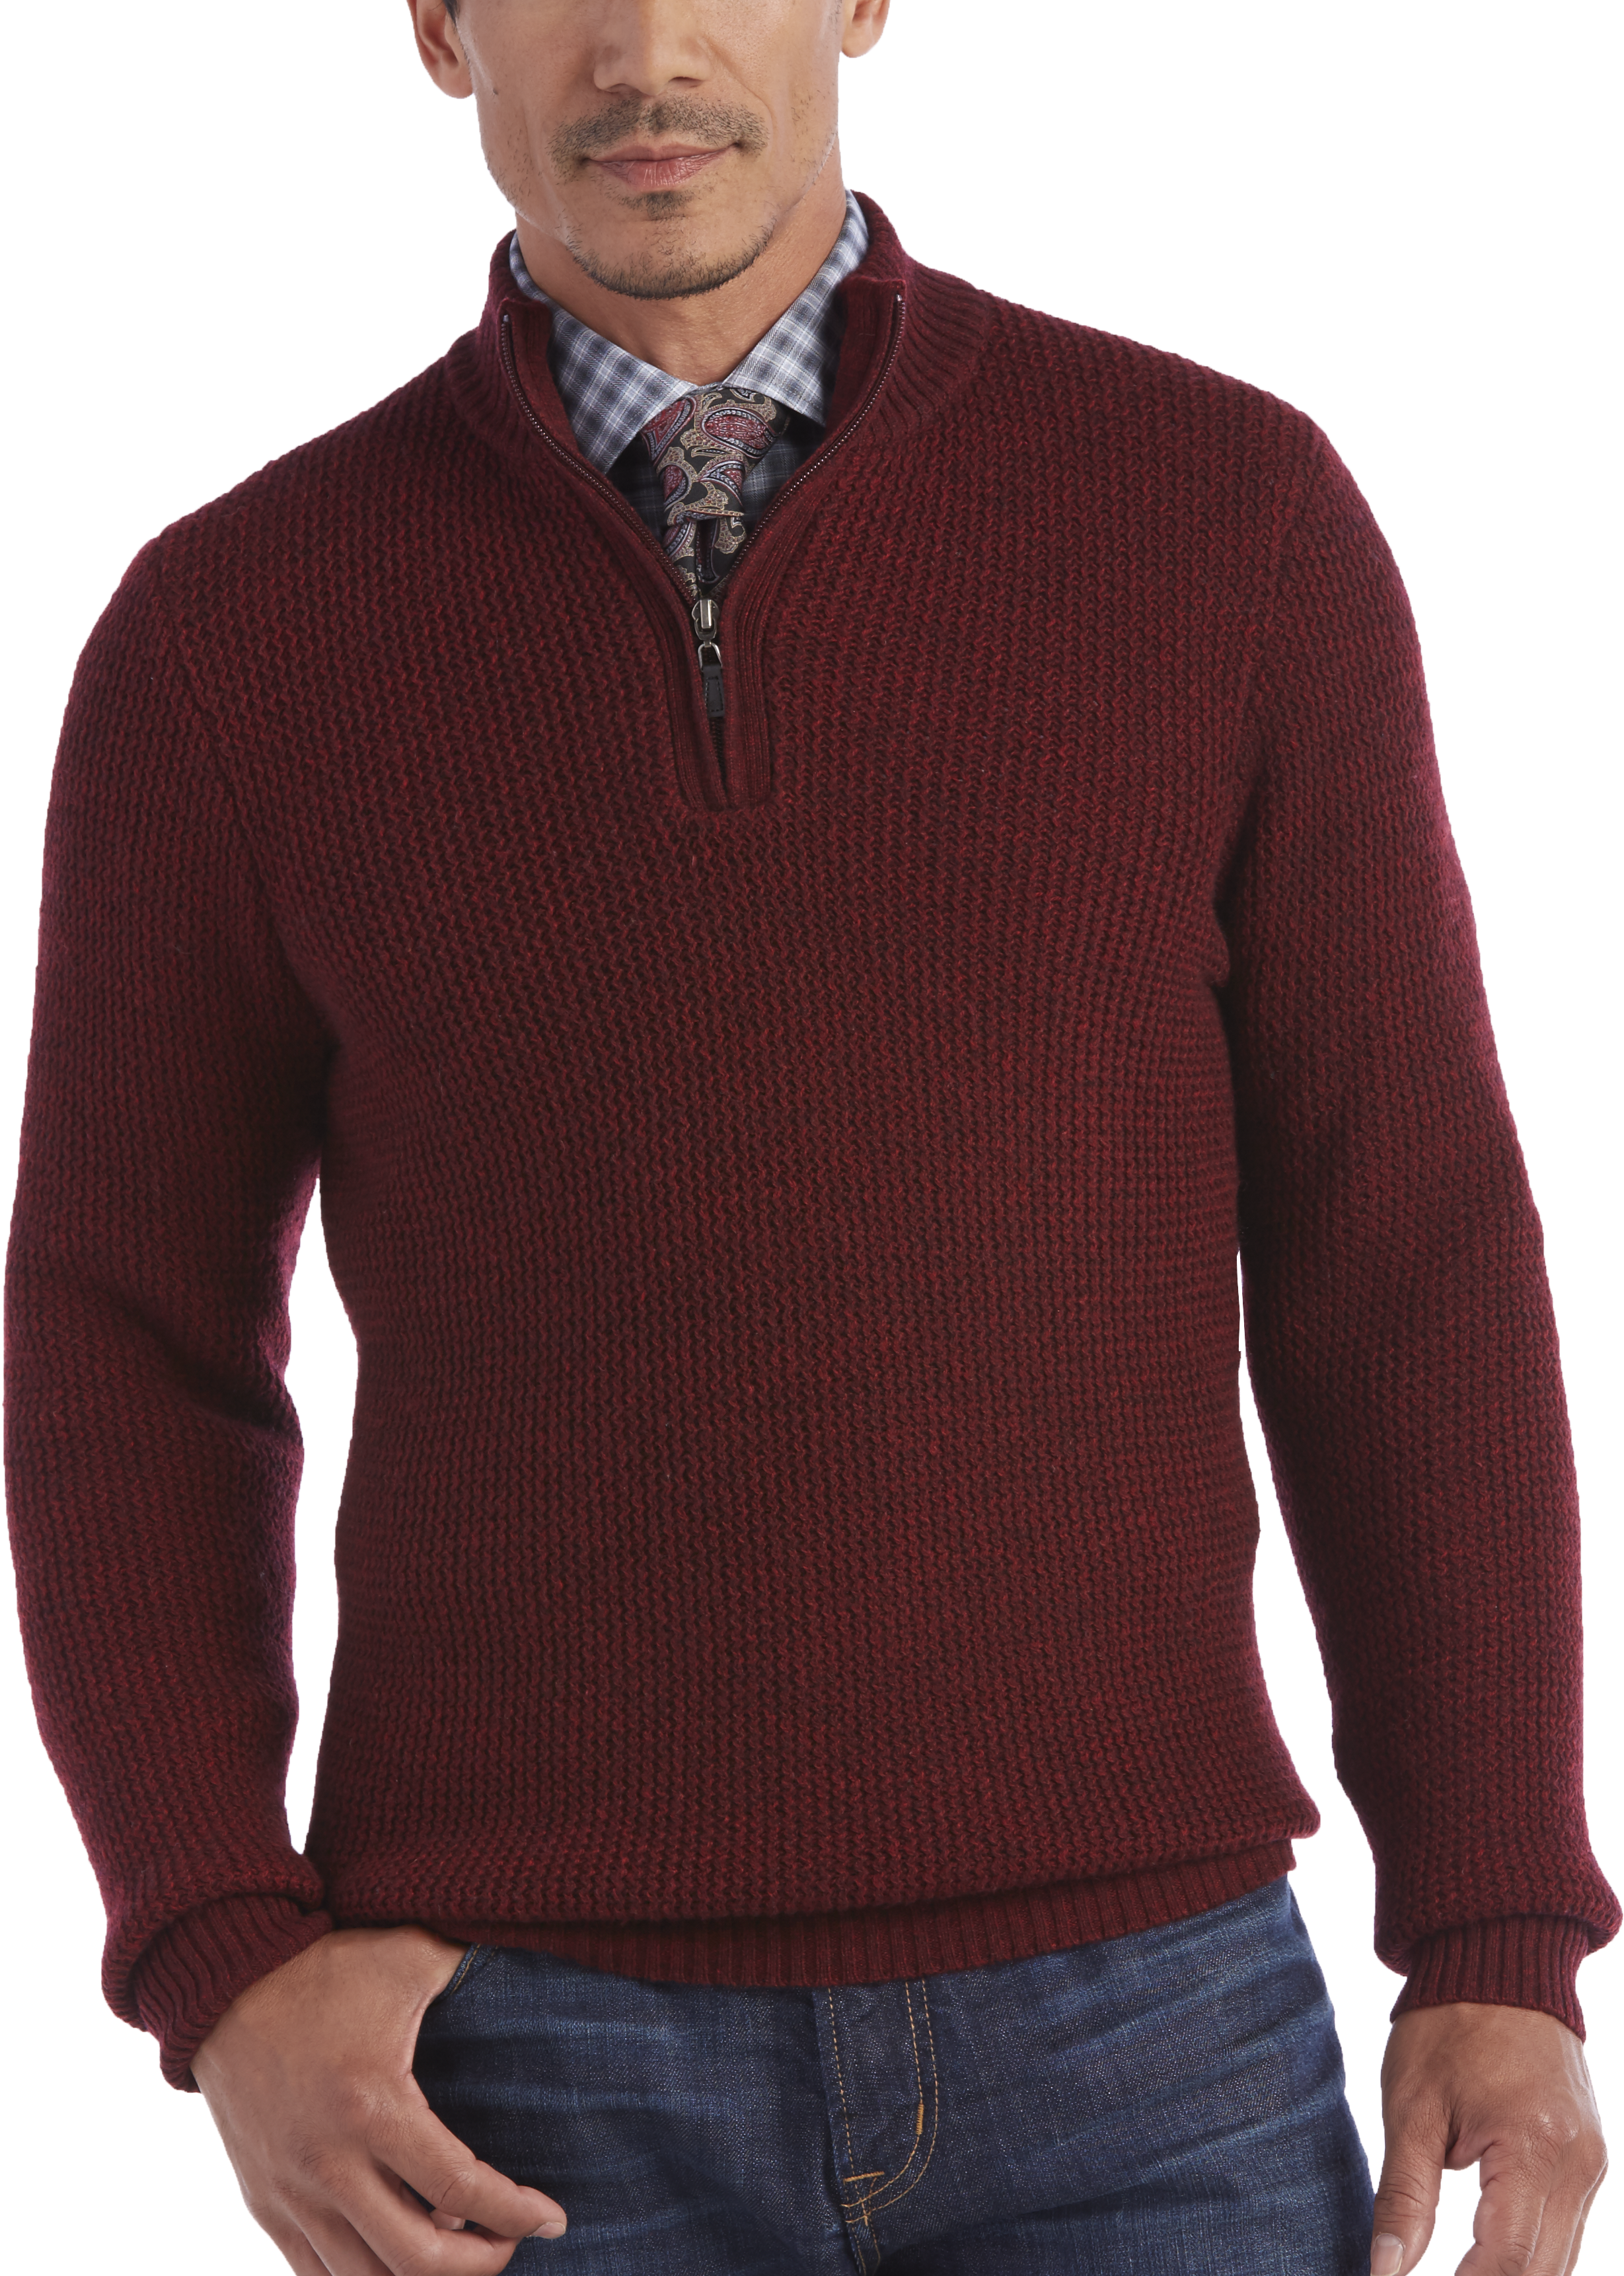 Joseph Abboud Burgundy Half-Zip Sweater - Men's Sale | Men's Wearhouse